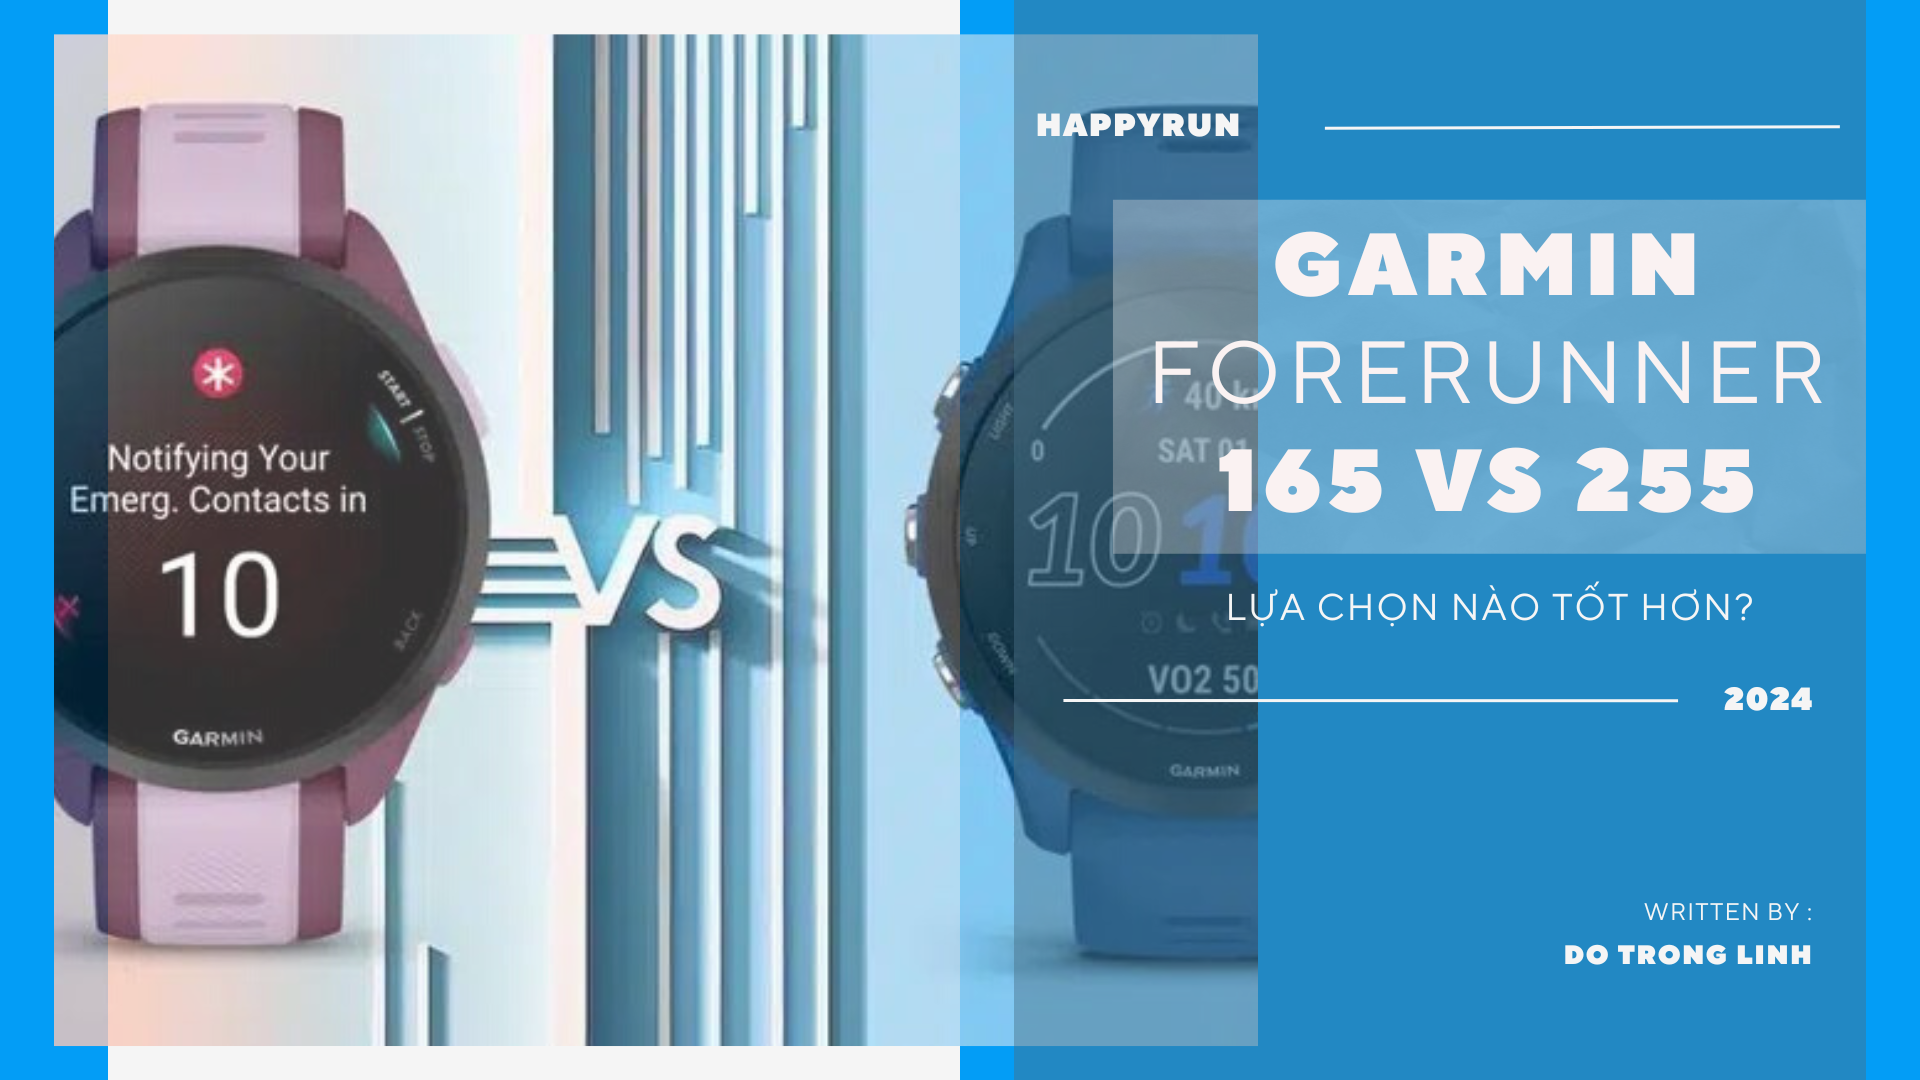 Garmin Forerunner 165 so với Forerunner 255 — Đồng hồ chạy bộ nào tốt nhất?